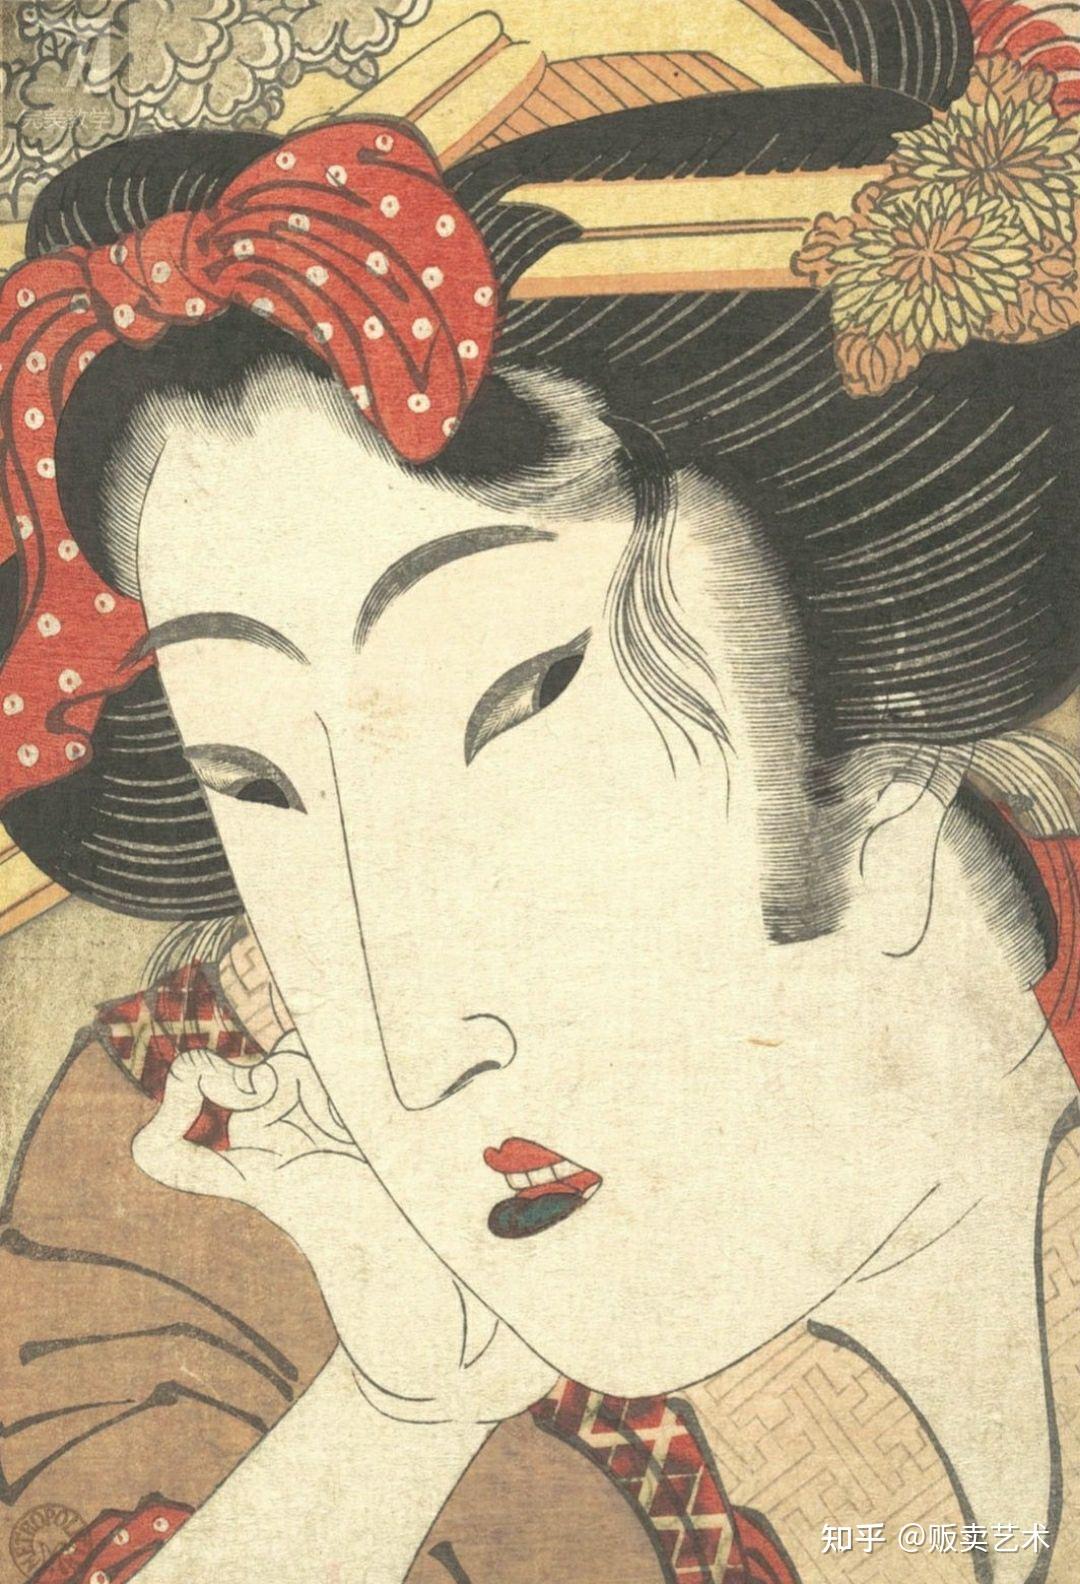 作为浮世绘美人画家,喜多川歌麿直追鸟居清长